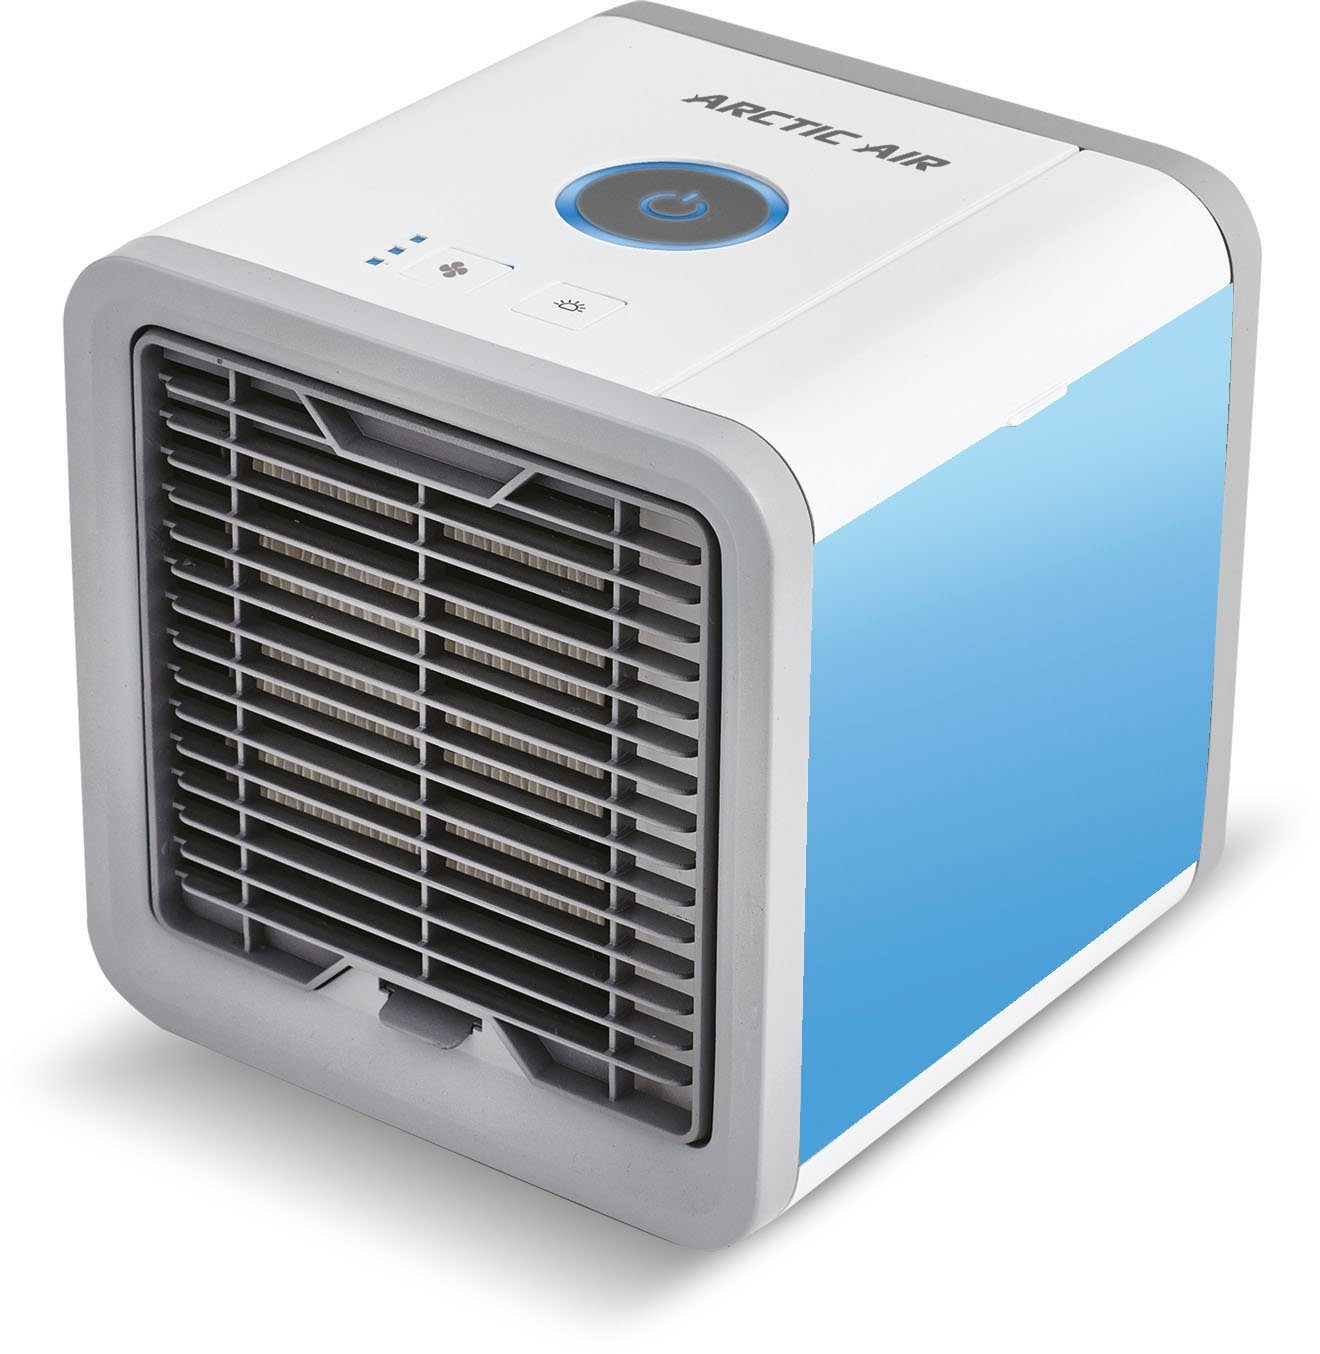 MediaShop Ventilatorkombigerät Arctic Air, Luftkühler, in Luft Umgebung und erfrischt Ihrer kühlt, befeuchtet die